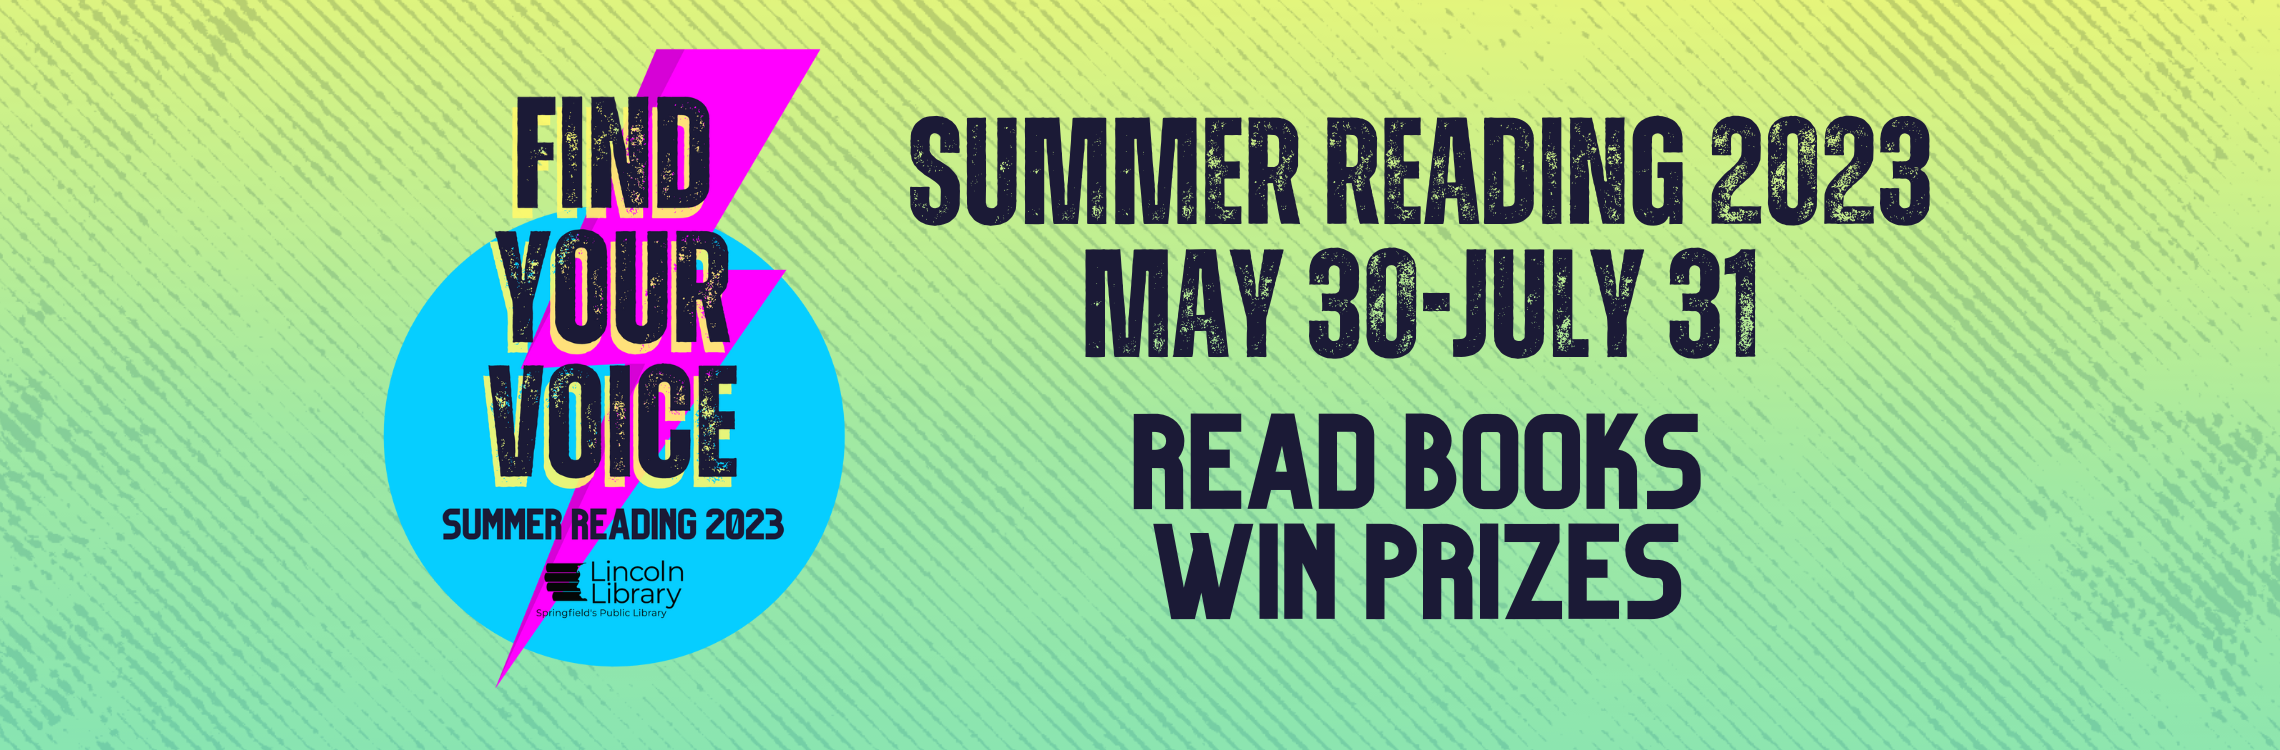 Summer Reading 2023 May 30-July 31